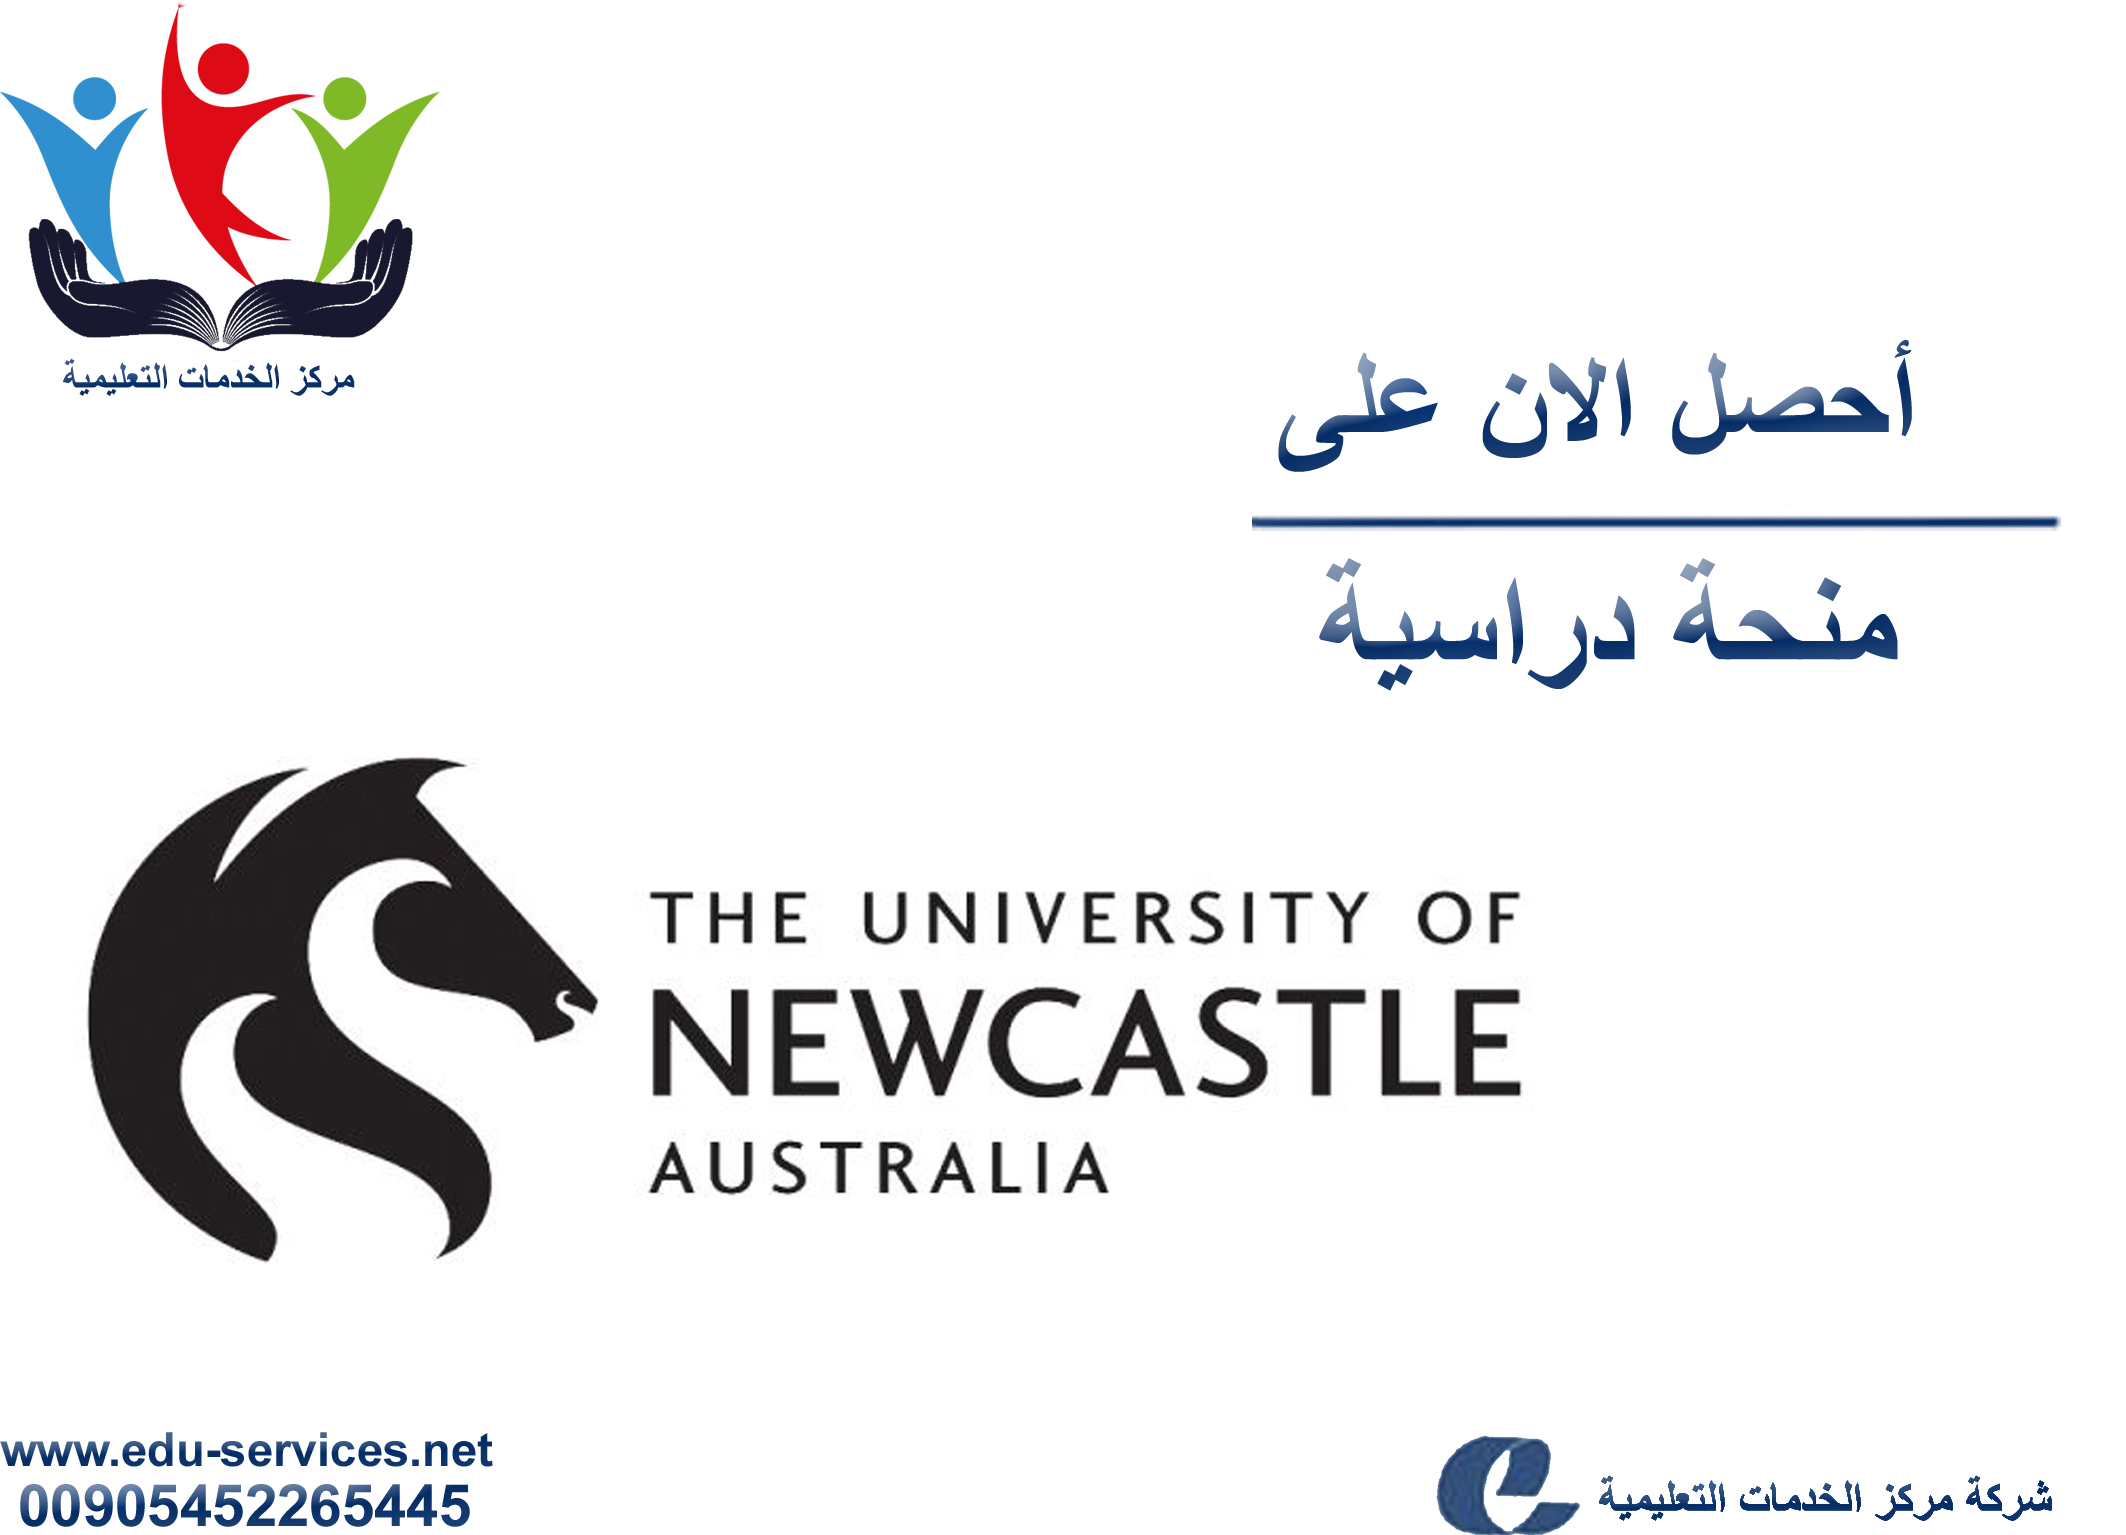 منح دراسية لدرجة البكالوريوس من UoN في أستراليا للعام 2019-2020